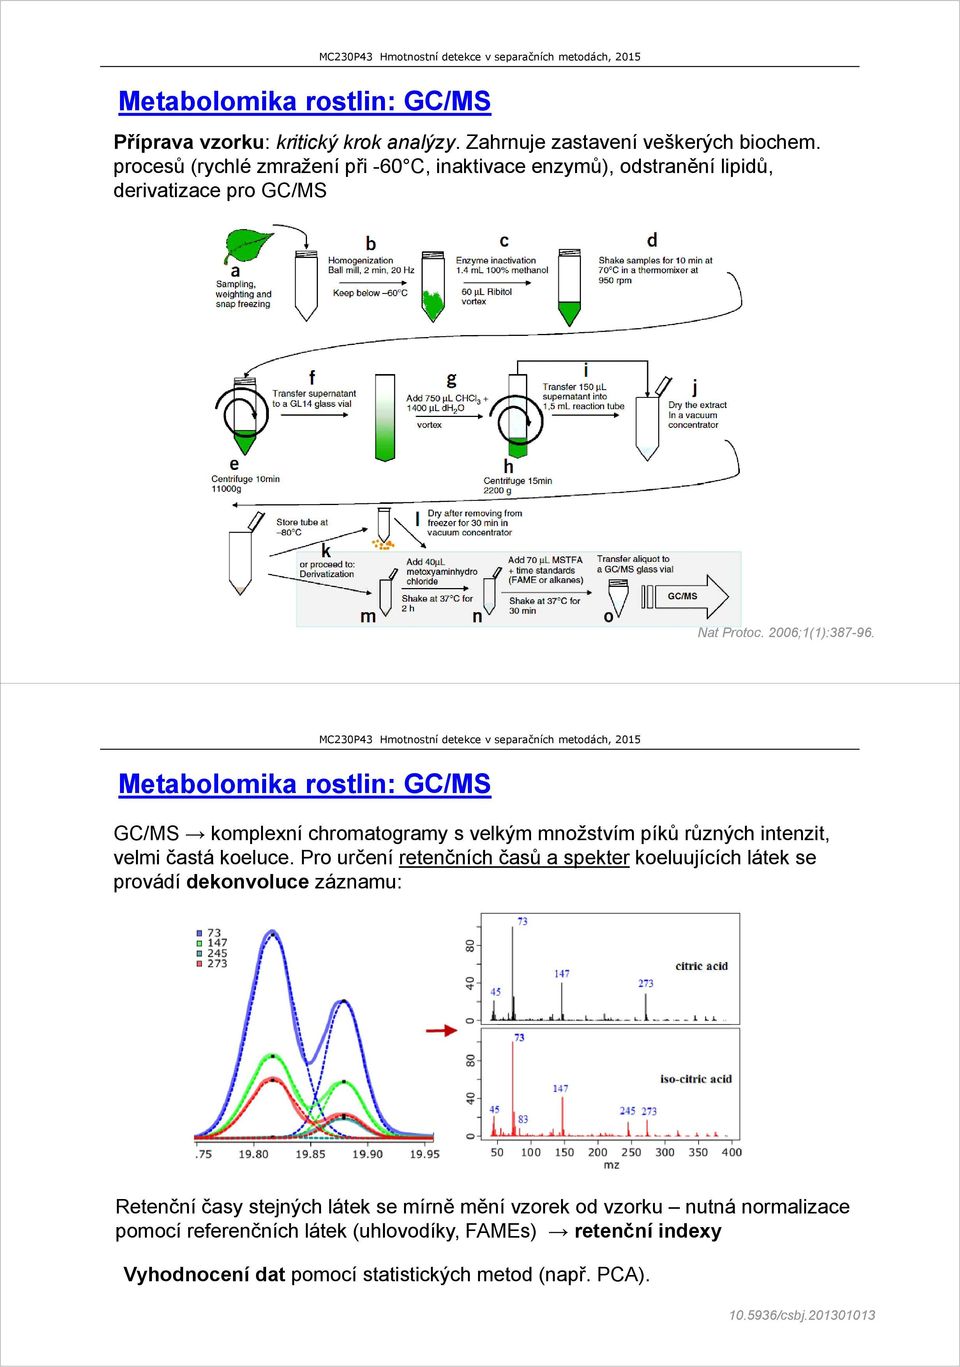 Metabolomika rostlin: GC/MS GC/MS komplexní chromatogramy s velkým množstvím píků různých intenzit, velmi častá koeluce.